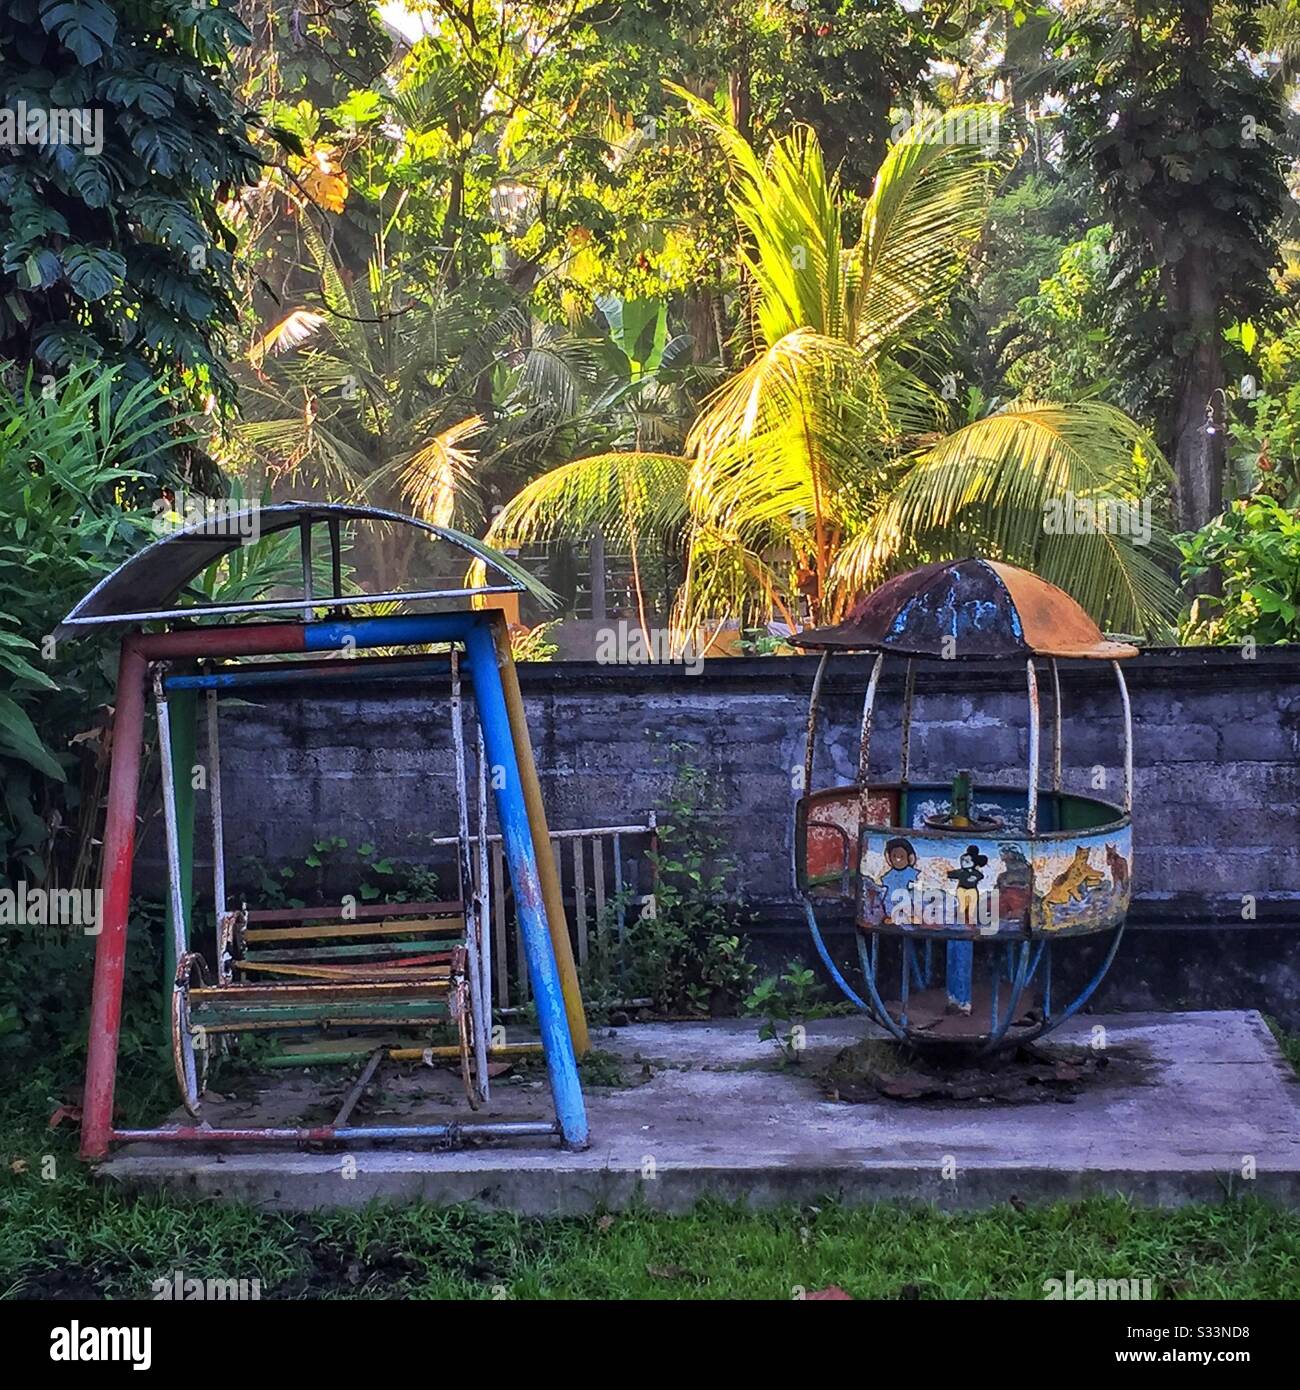 Children's play equipment, Sengkidu, Candidasa, Bali, Indonesia Stock Photo